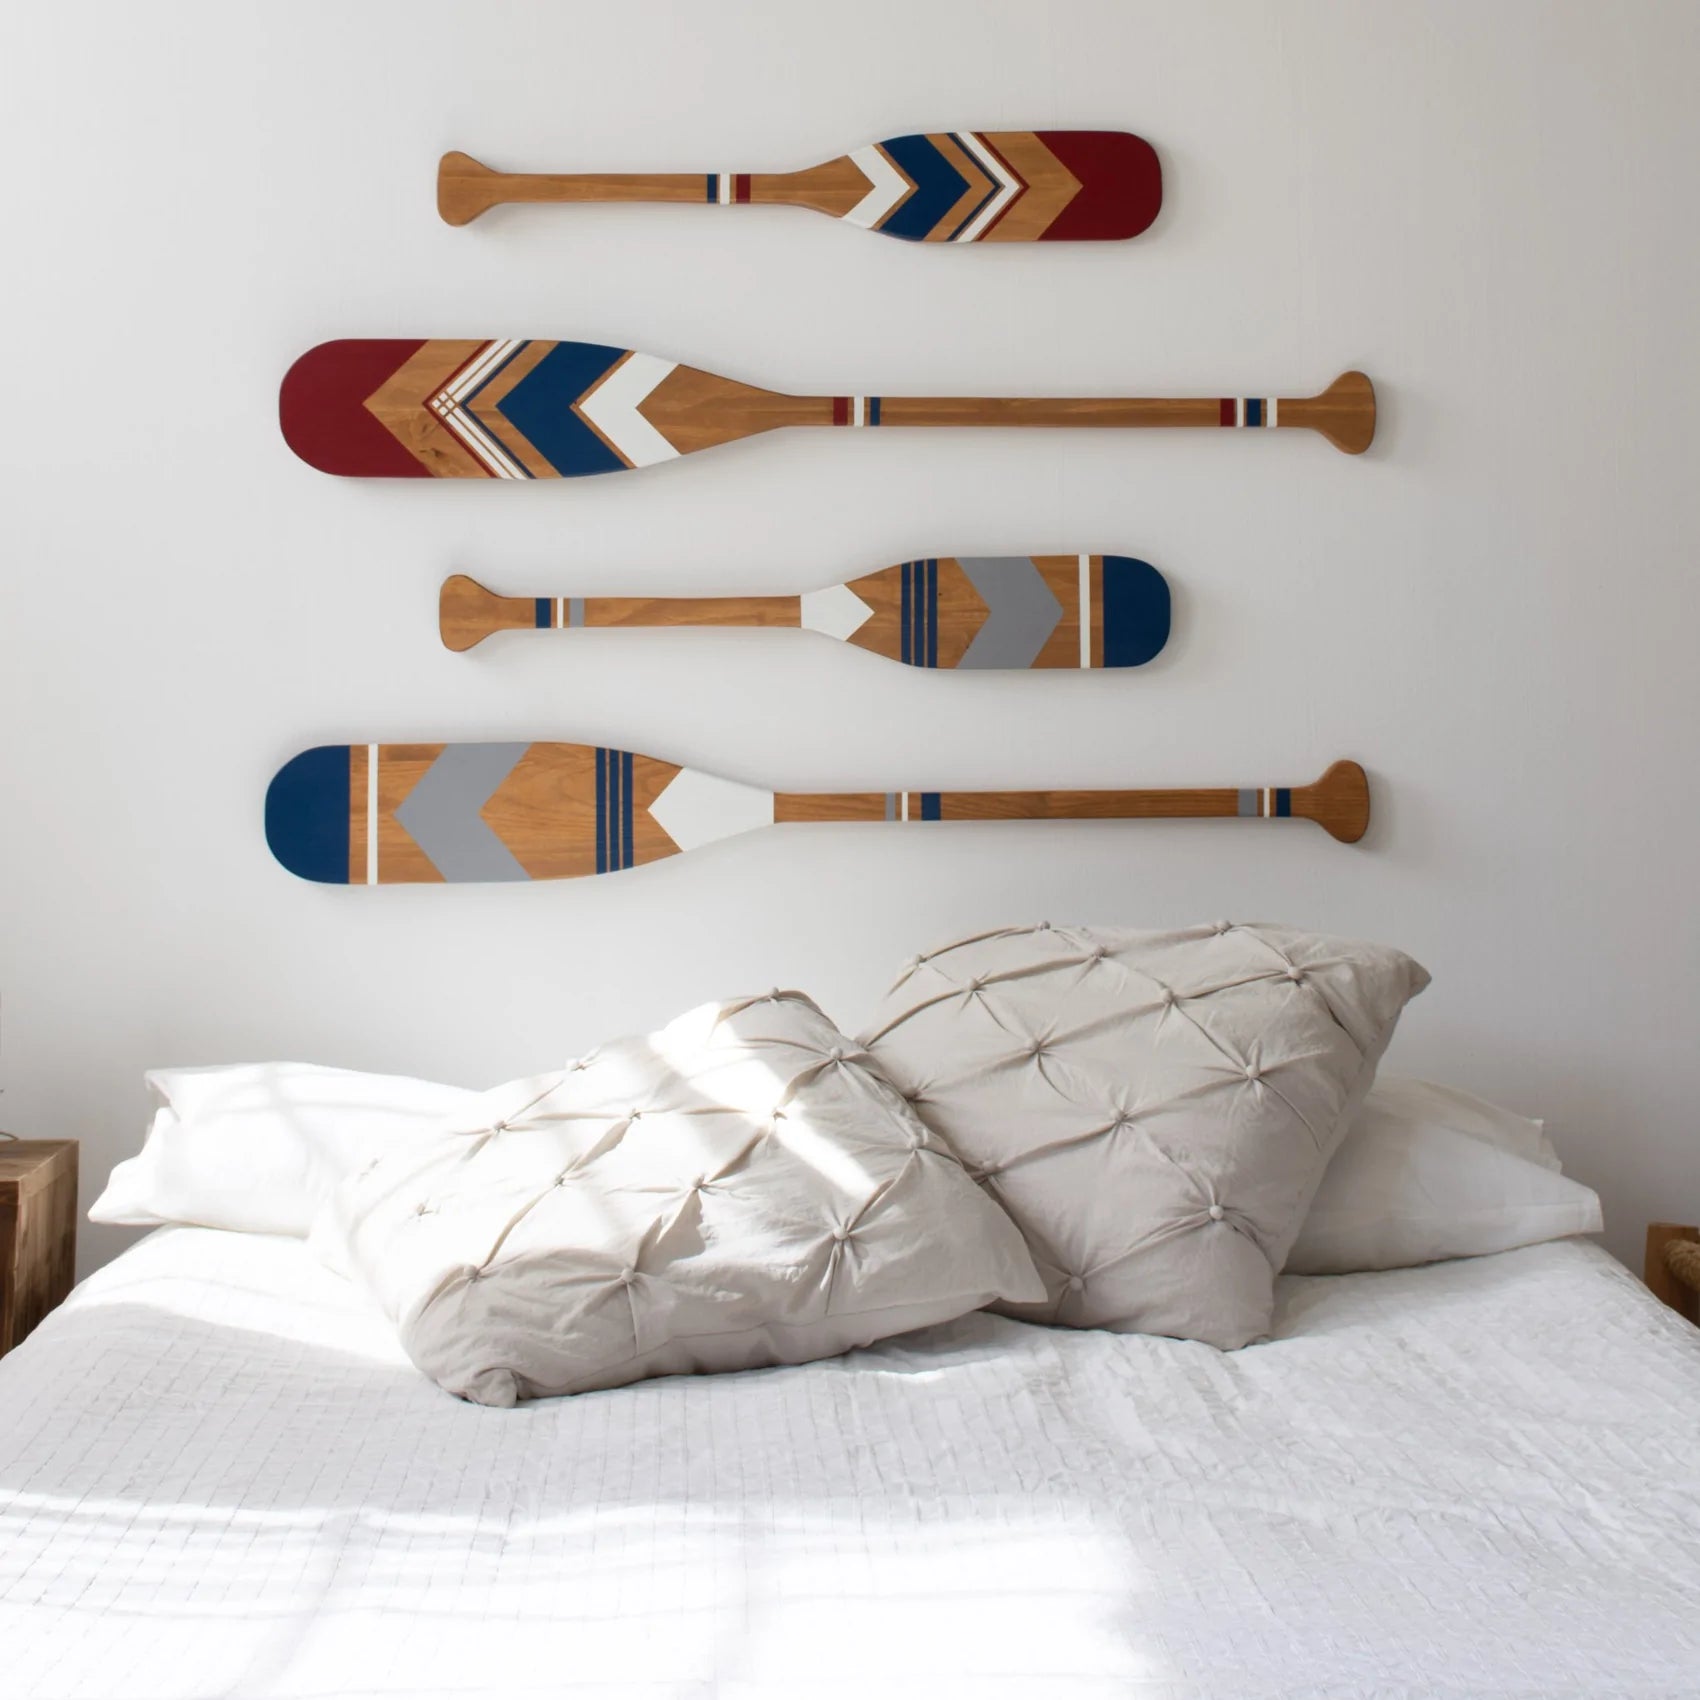 Remos de surf decorativos como cabecero de cama.